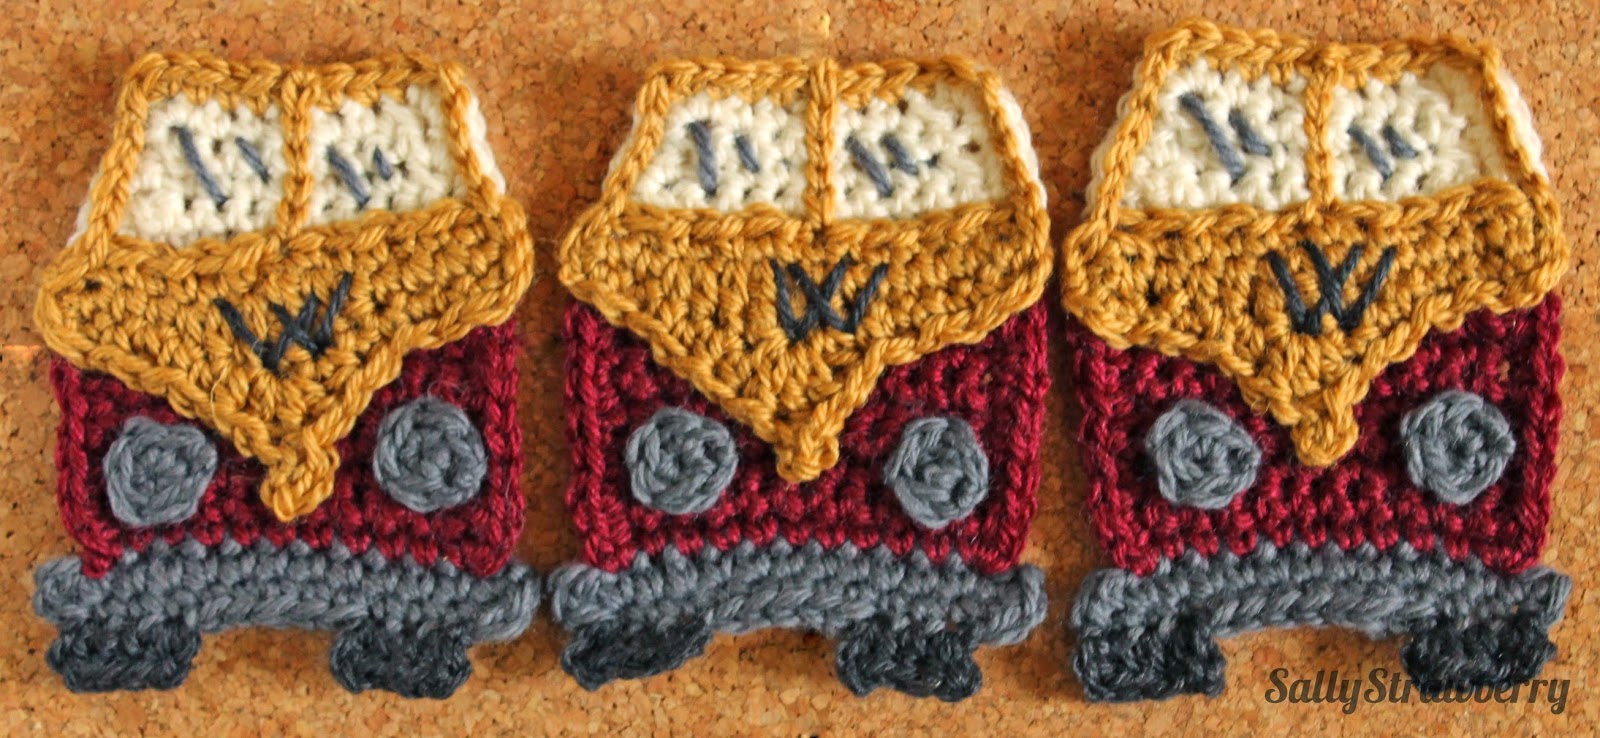 Crochet campervan bunting